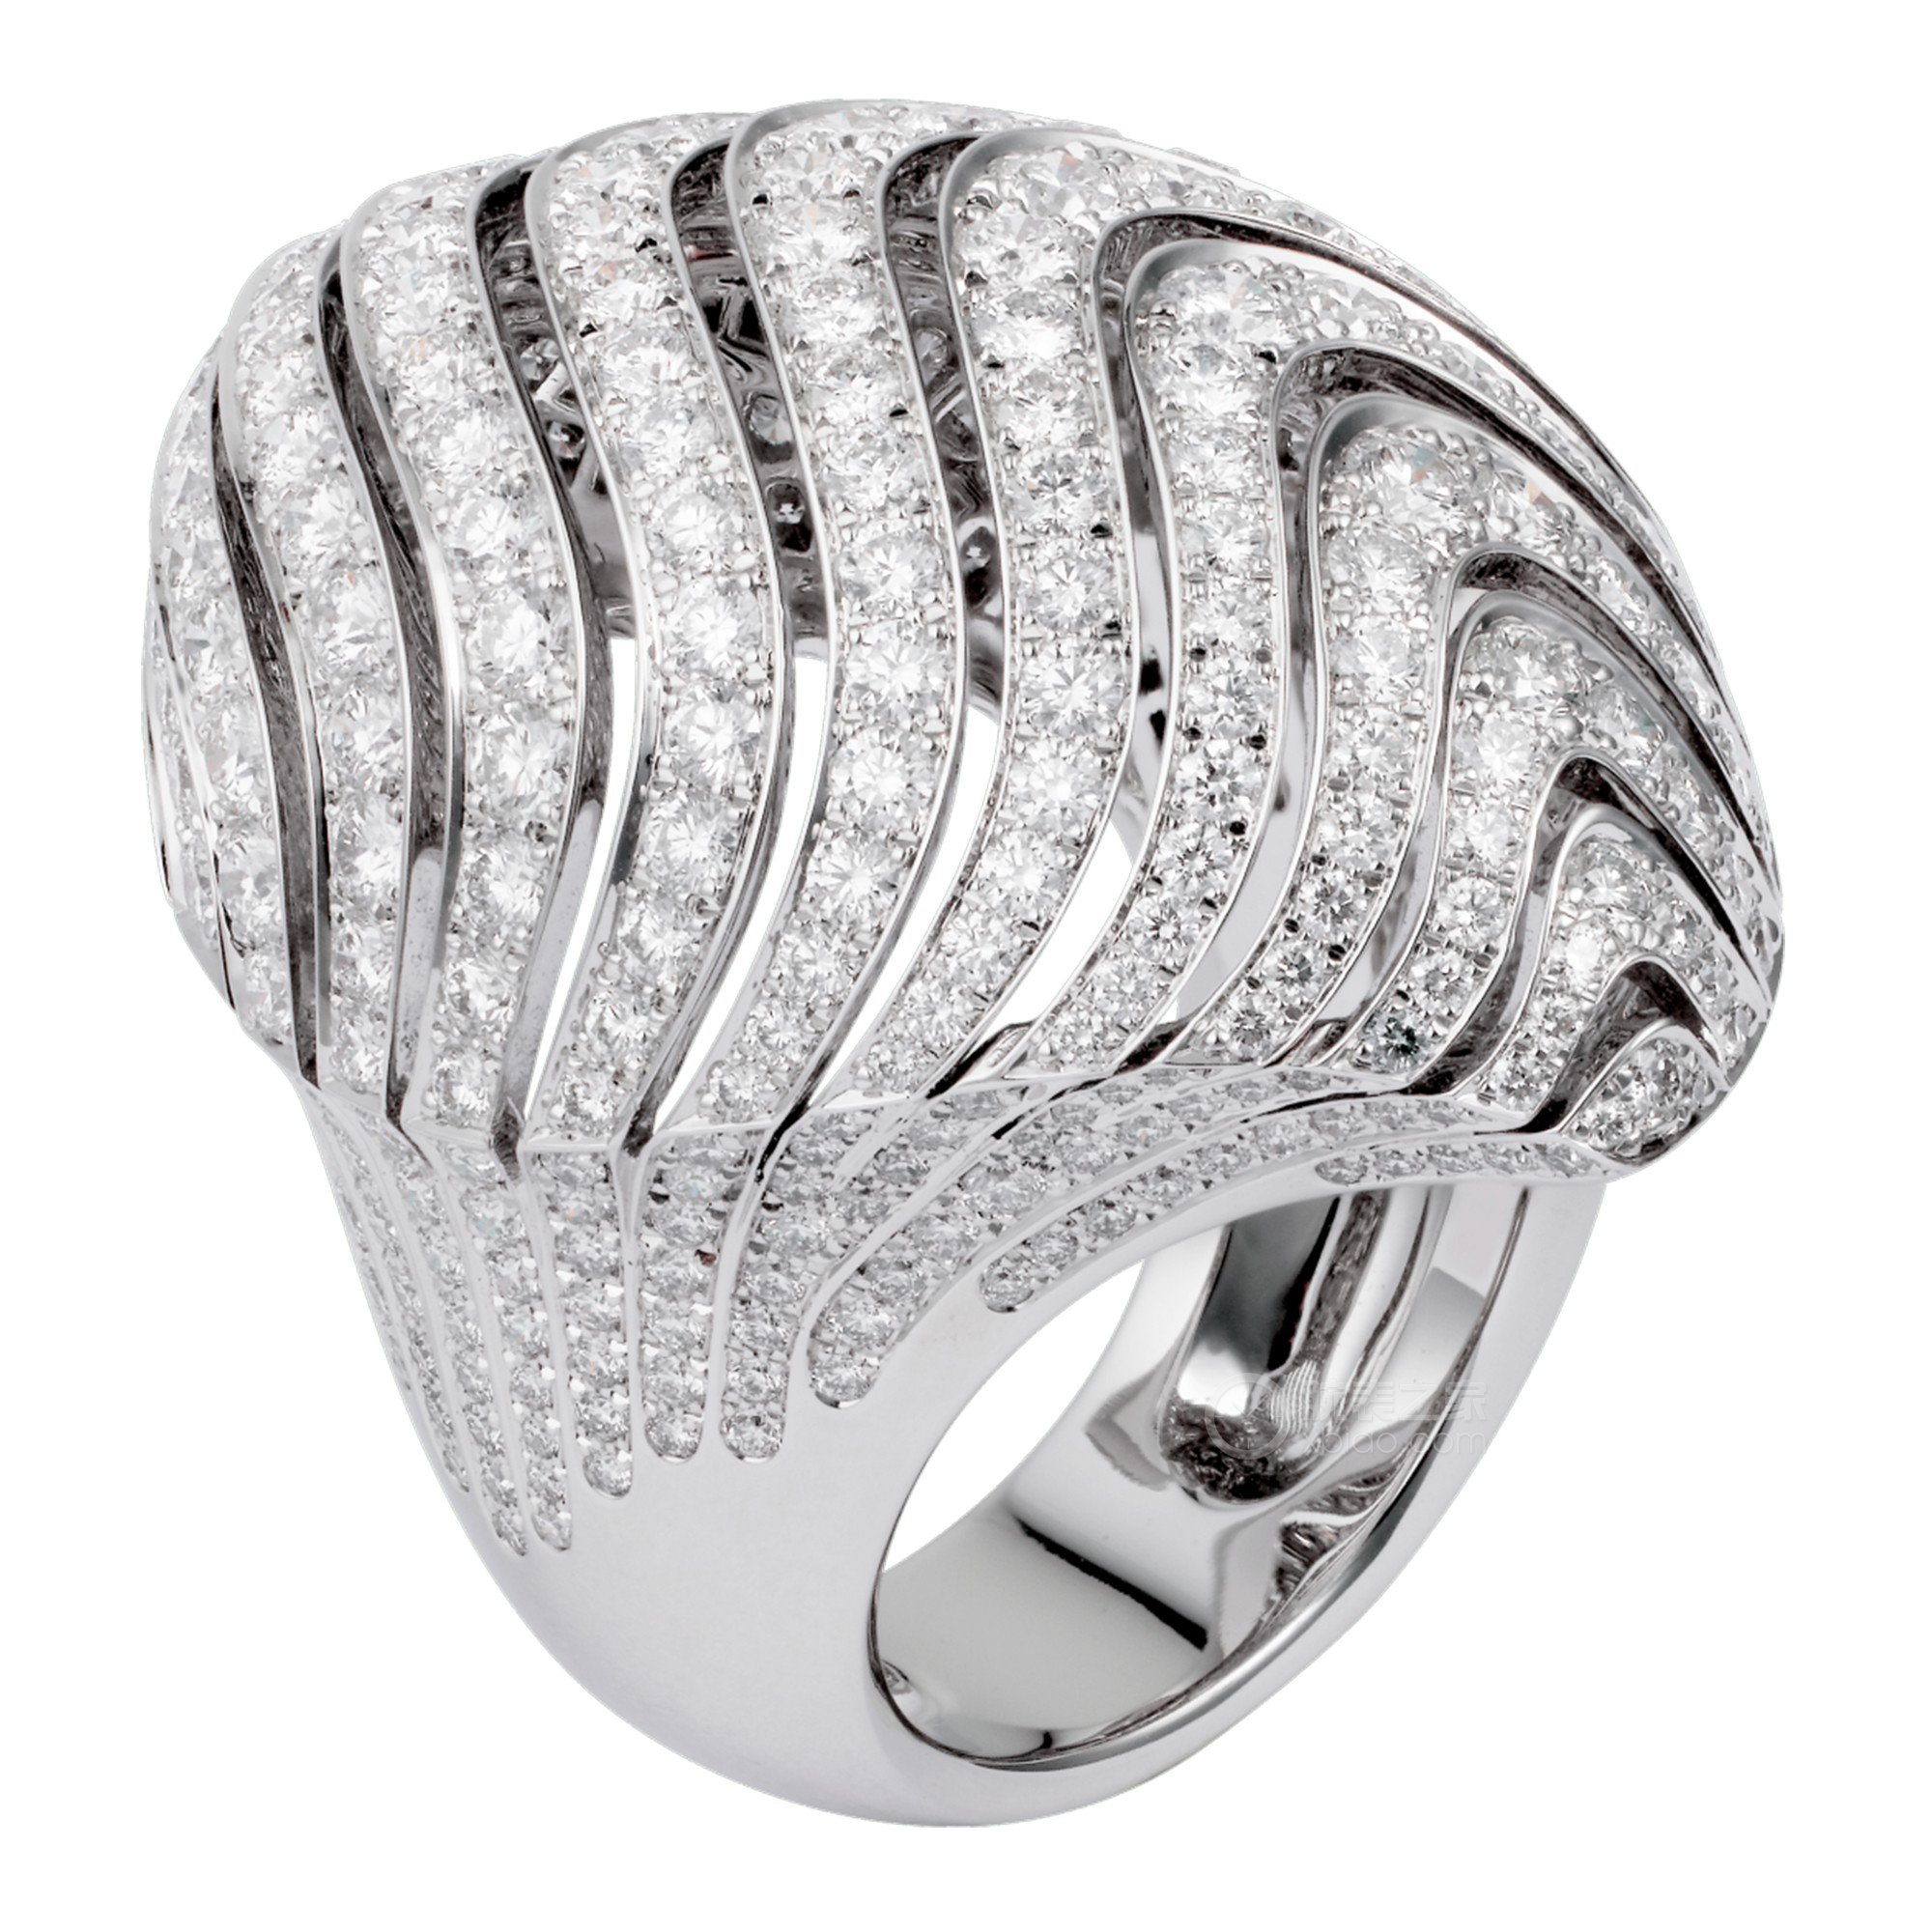 卡地亚高级珠宝H4243900戒指